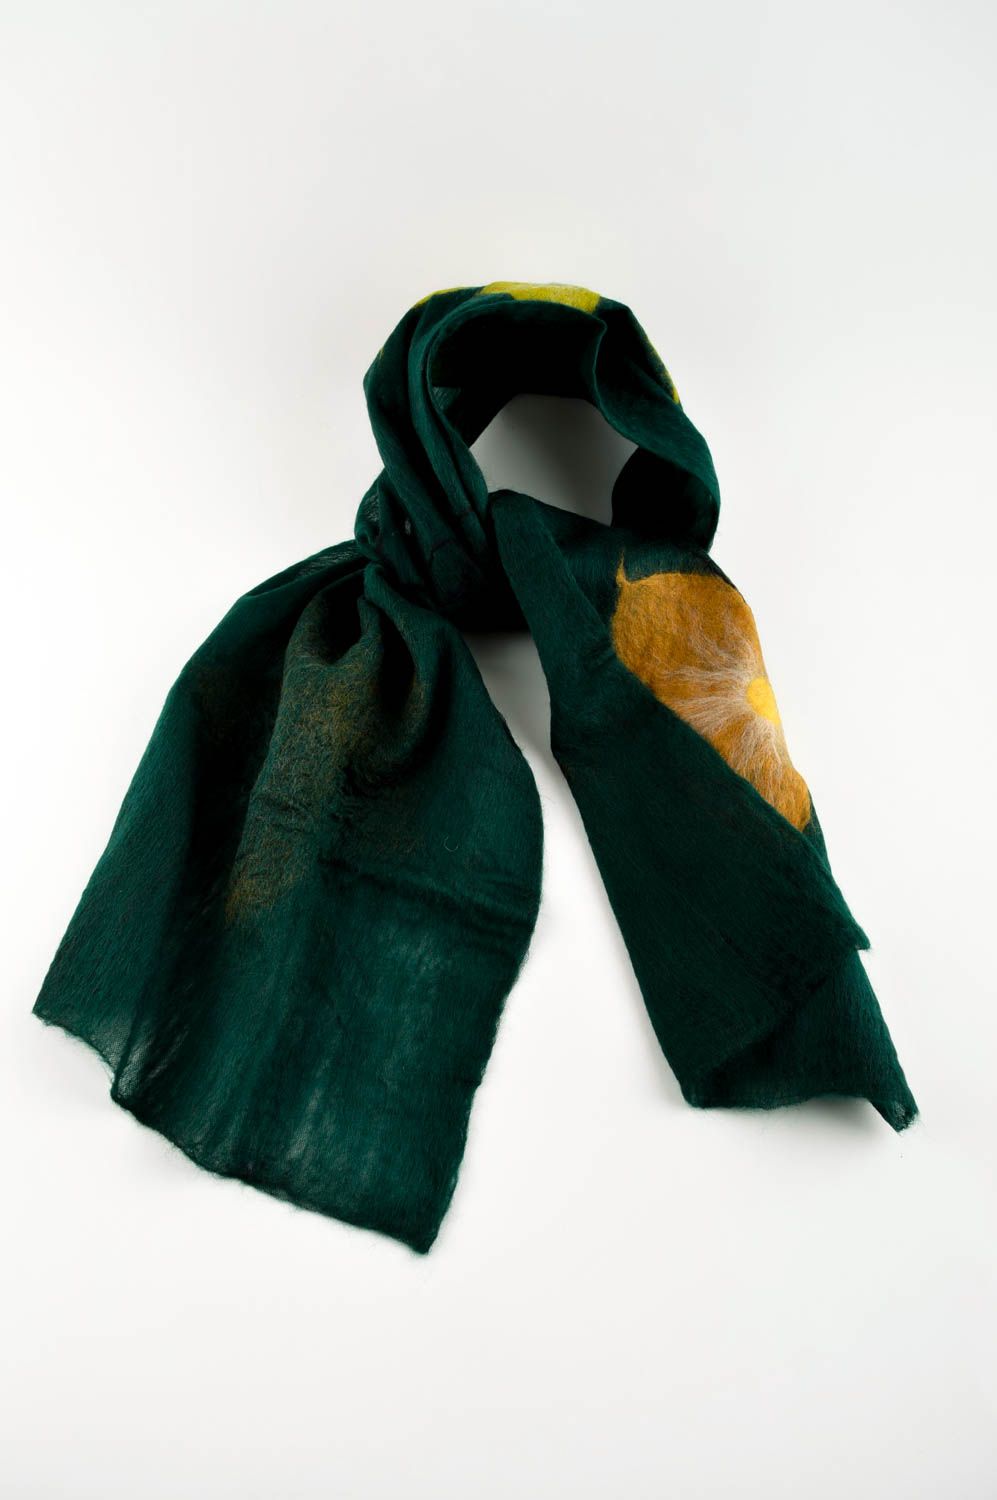 Handmade gefilzter Schal Frauen Accessoire Geschenk für Frau aus Wolle  foto 2